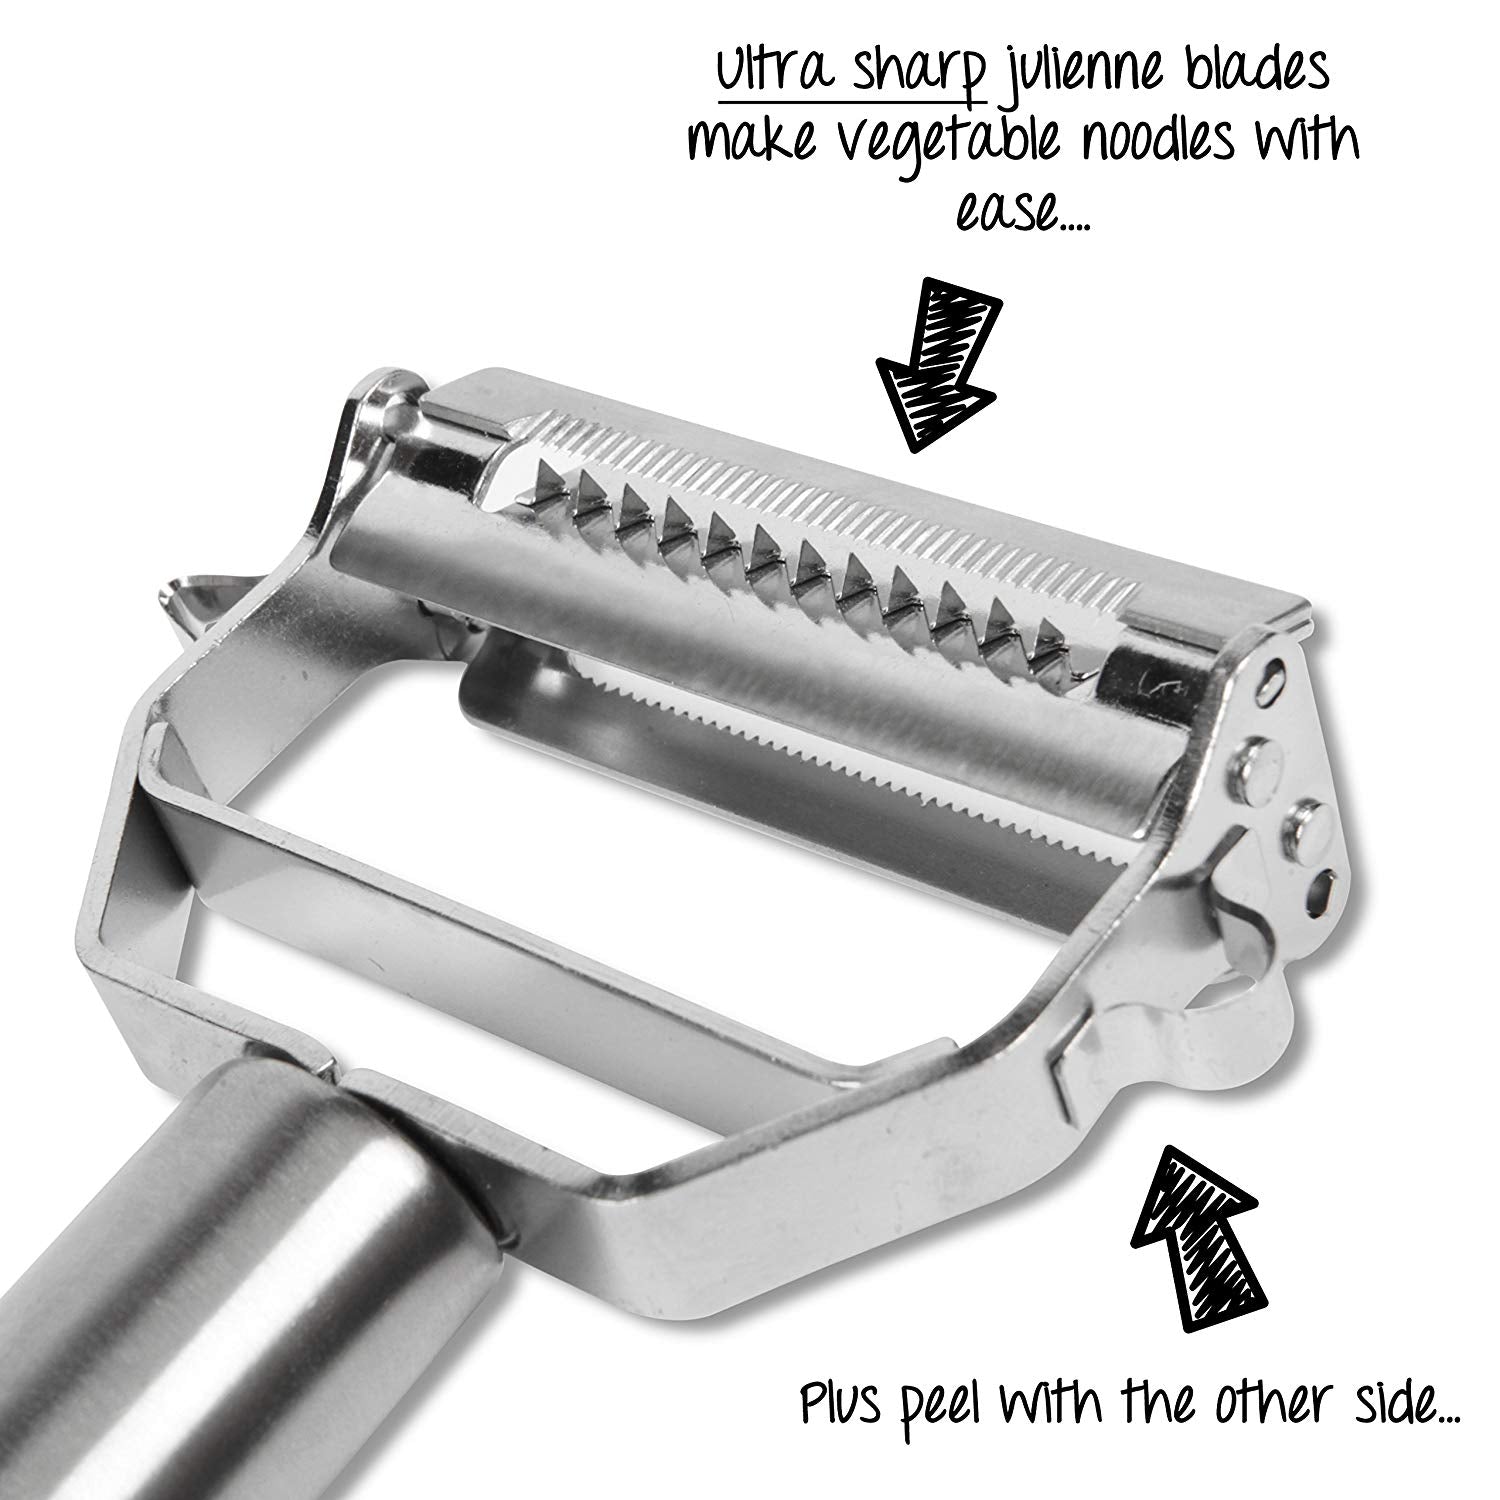 Stainless Steel Multi-Use Peeler/Slicer/Julienne Slicer